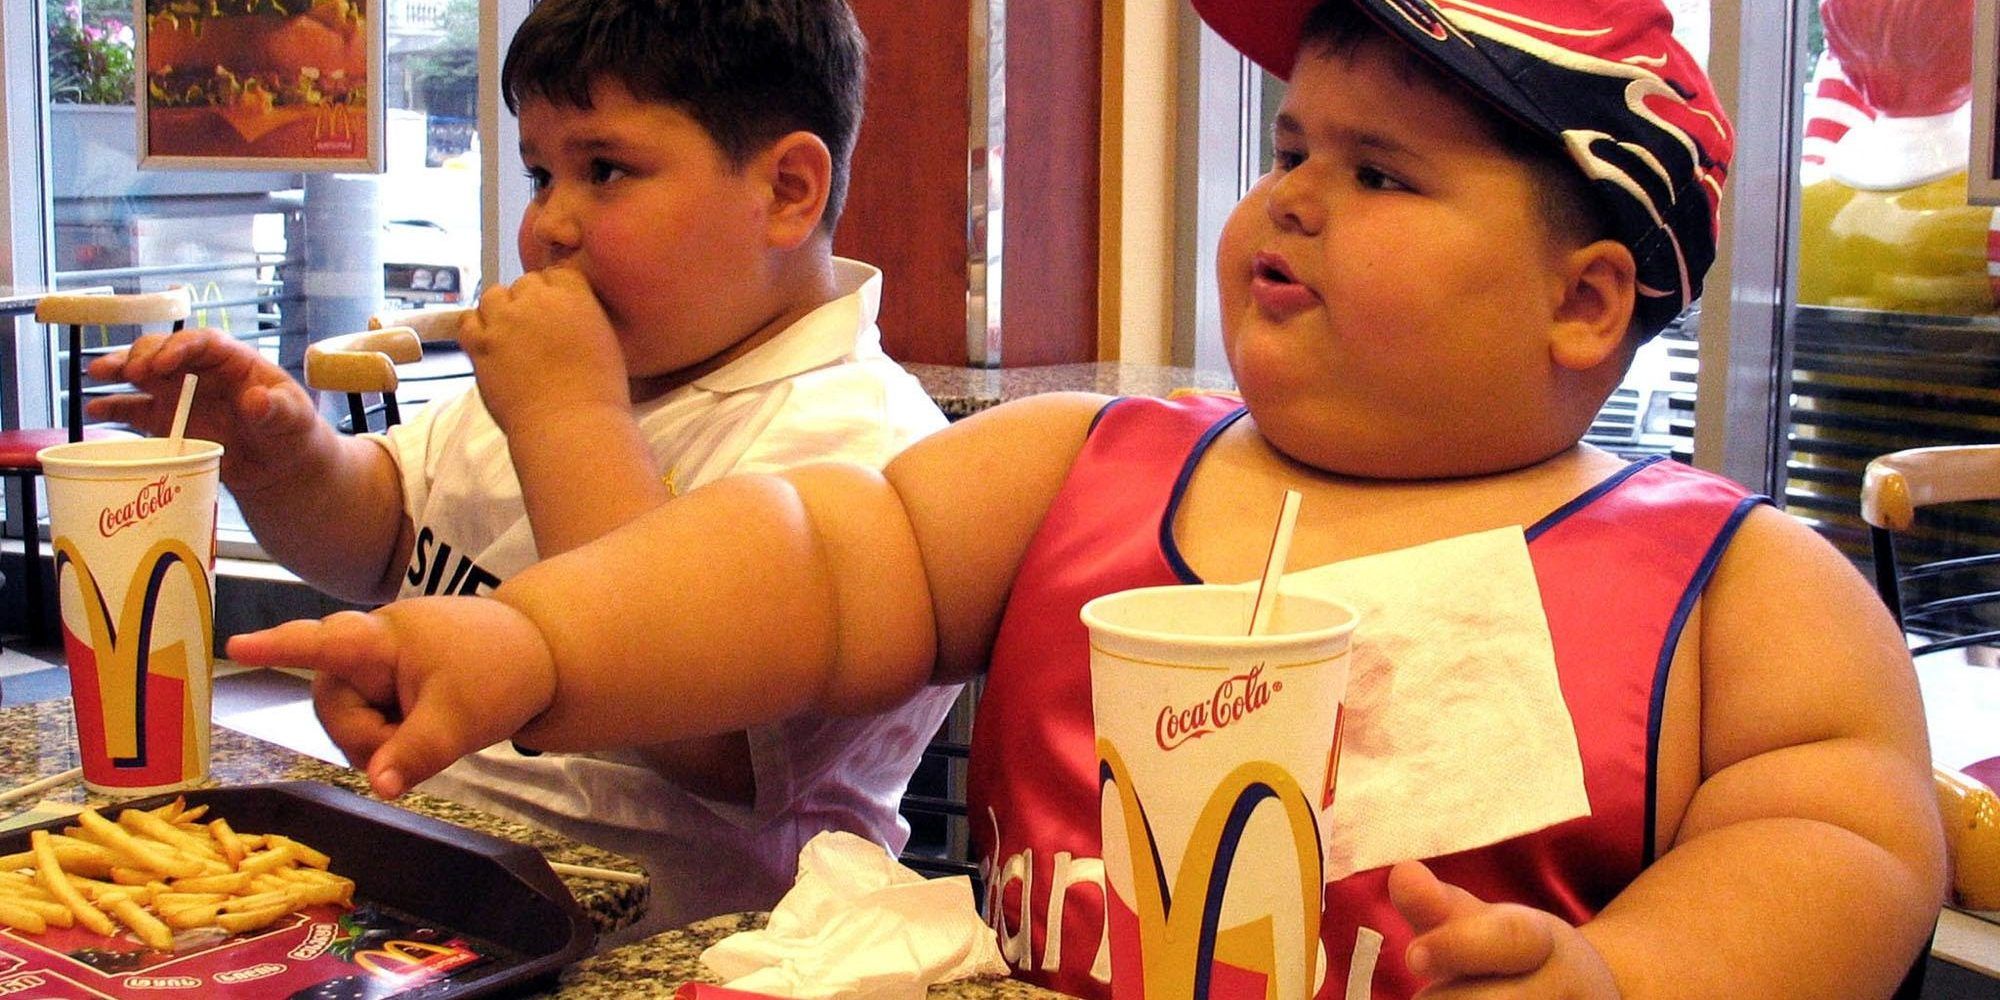 очень толстые дети фото